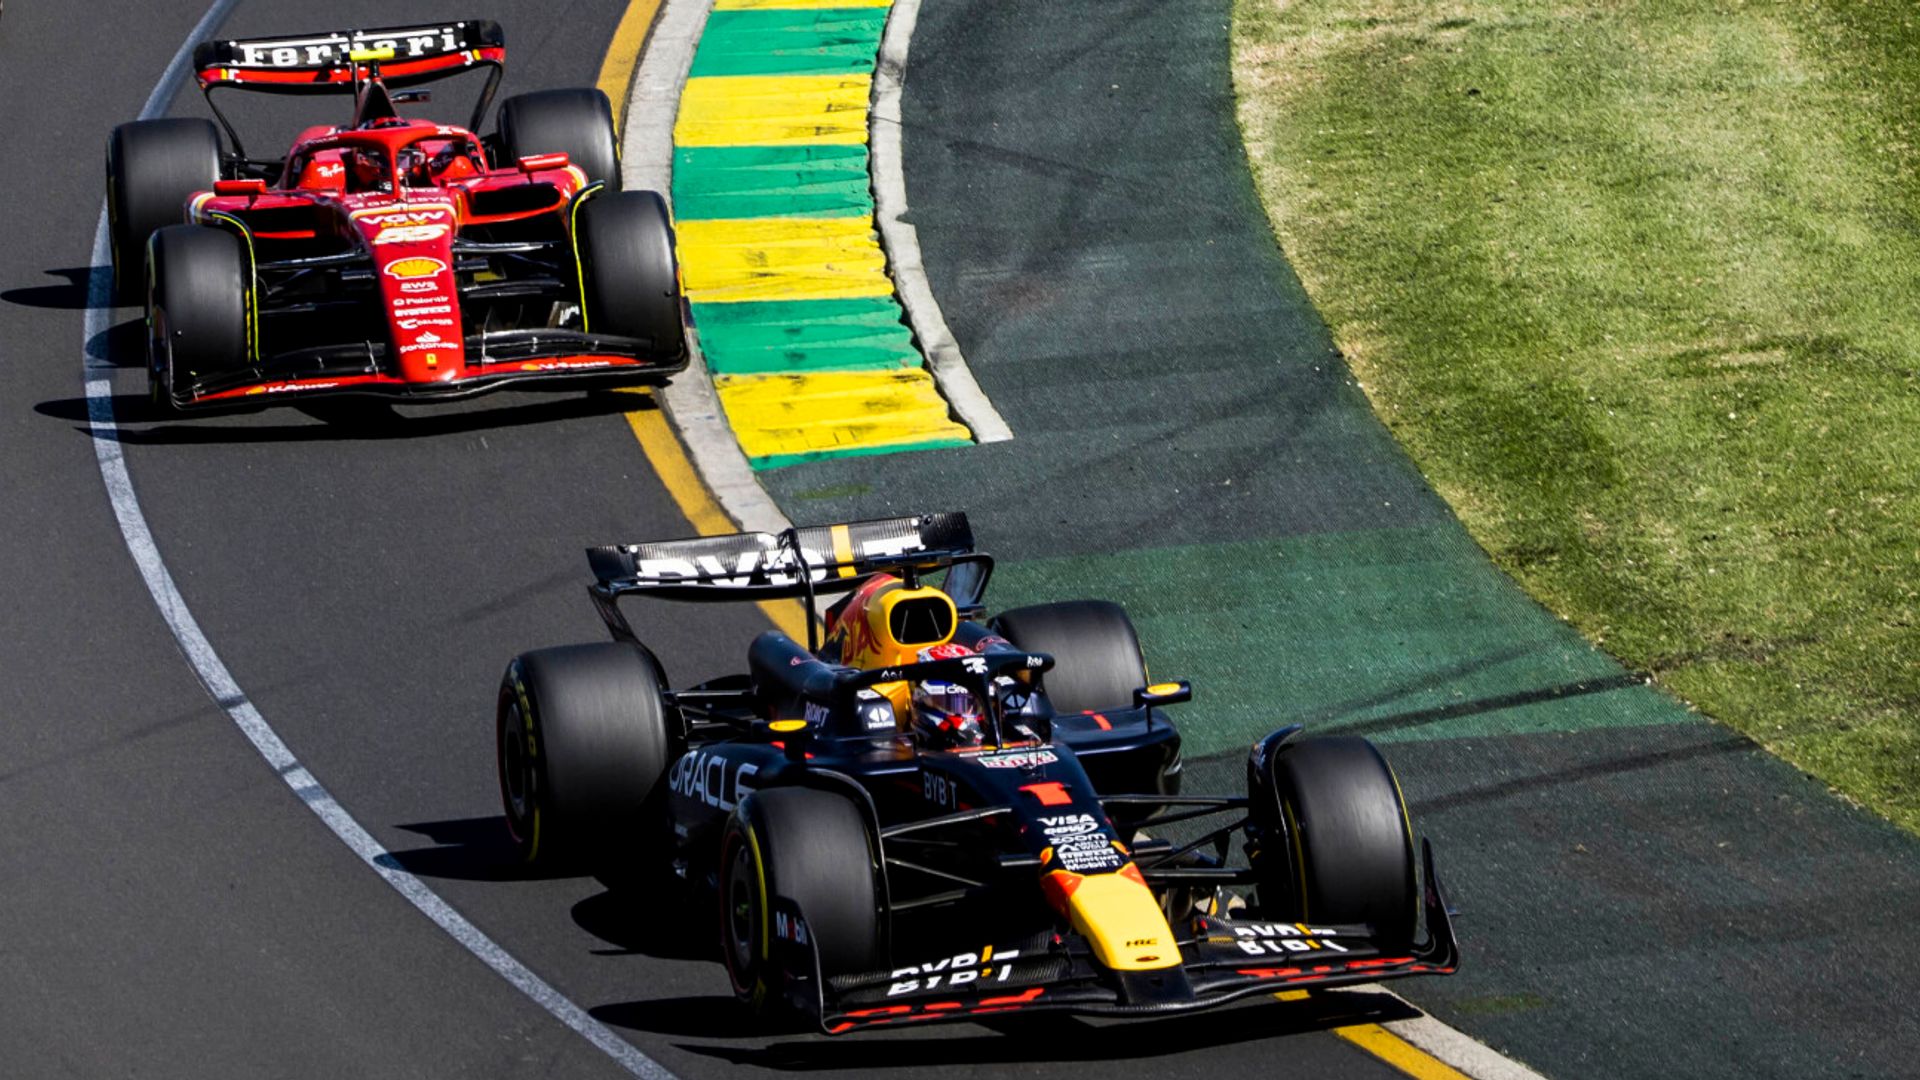 Vasseur: Ferrari win proved Red Bull will make mistakes under pressure